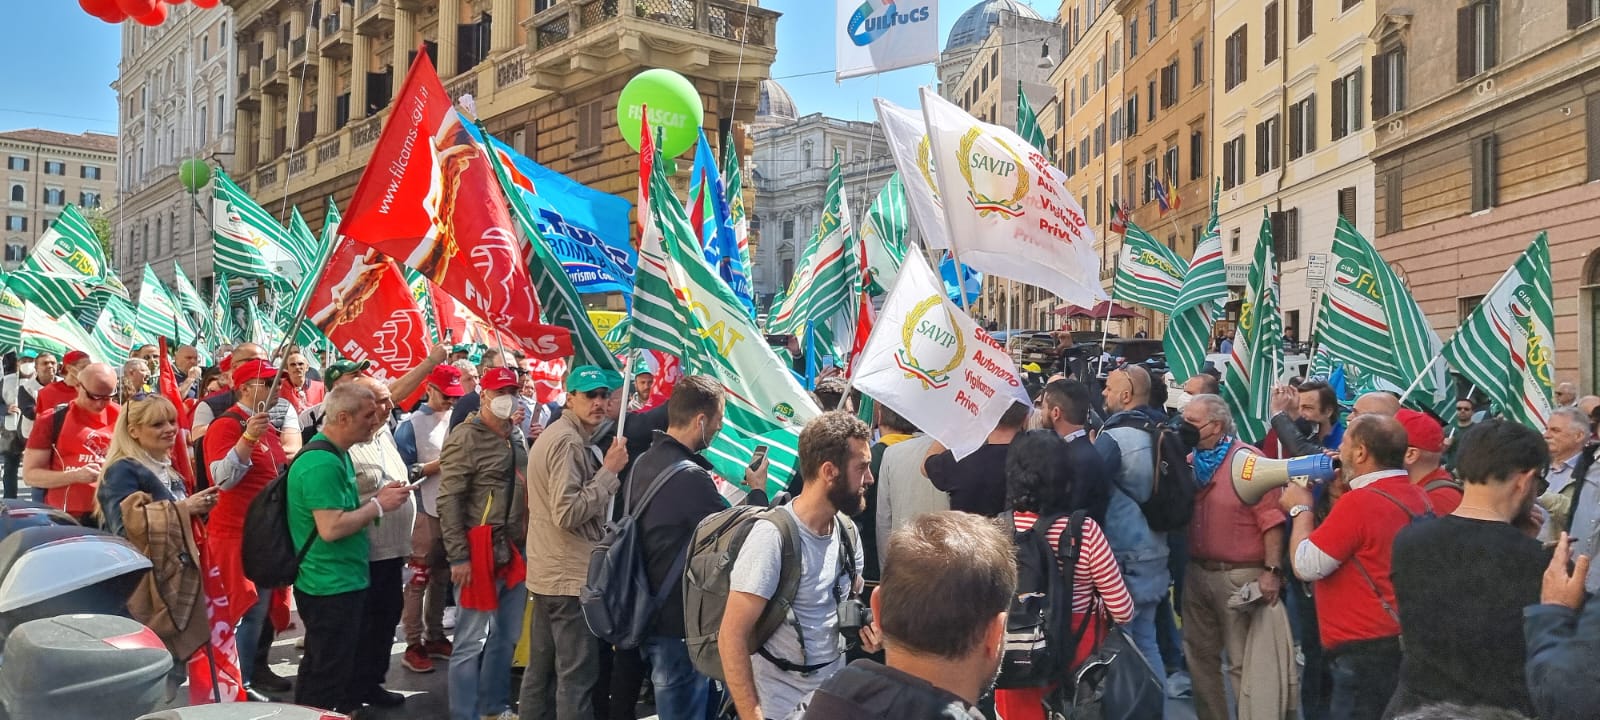 Protesta vigilanza privata Sindacato Savip oggi a Roma